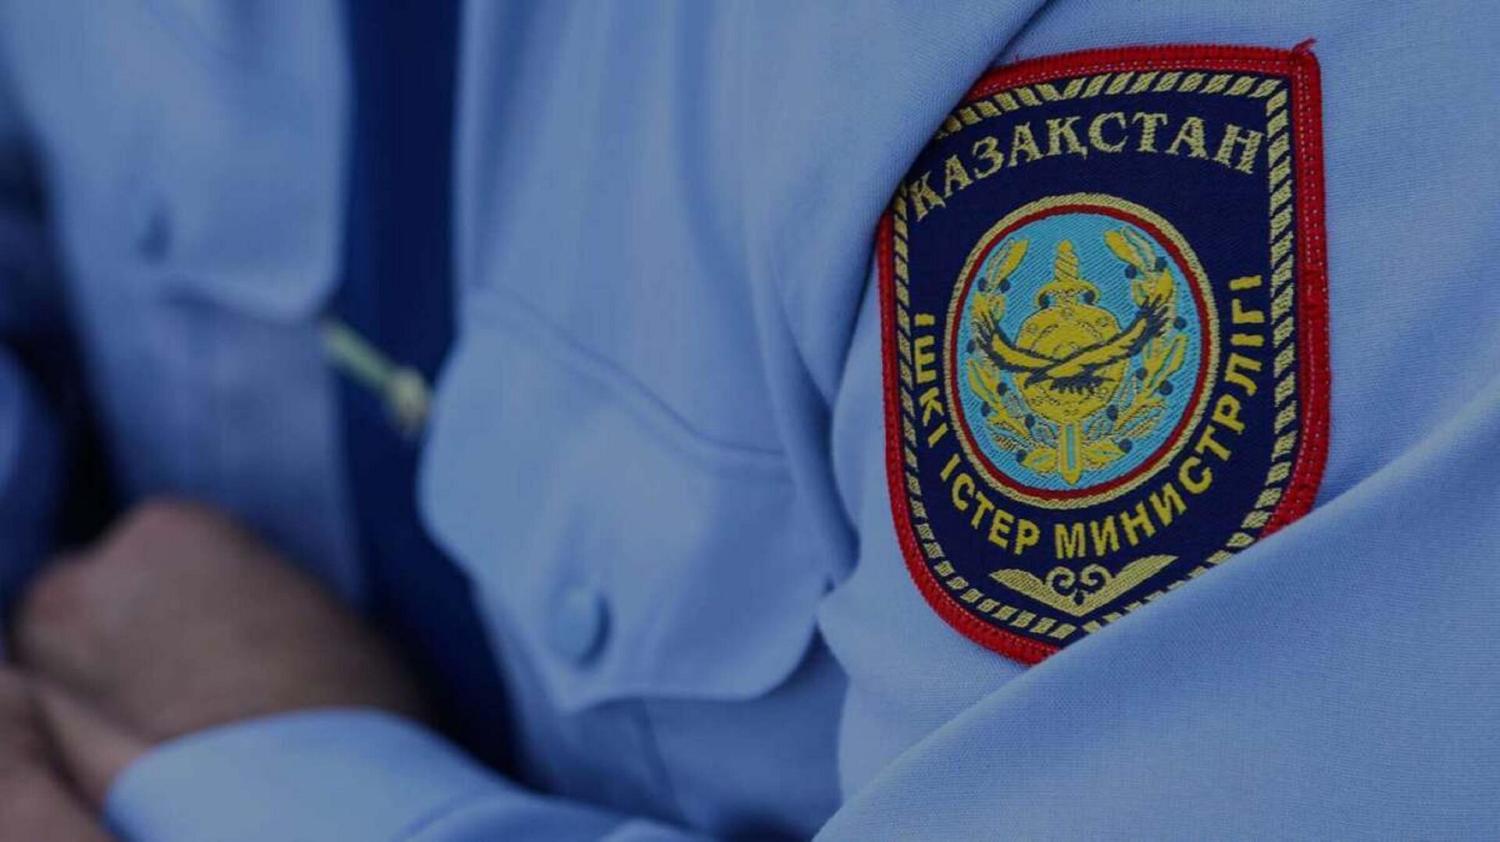 Астаналық полицейлер жұмыс берушінің әшекейлерін ұрлаған үй қызметшісін ұстады